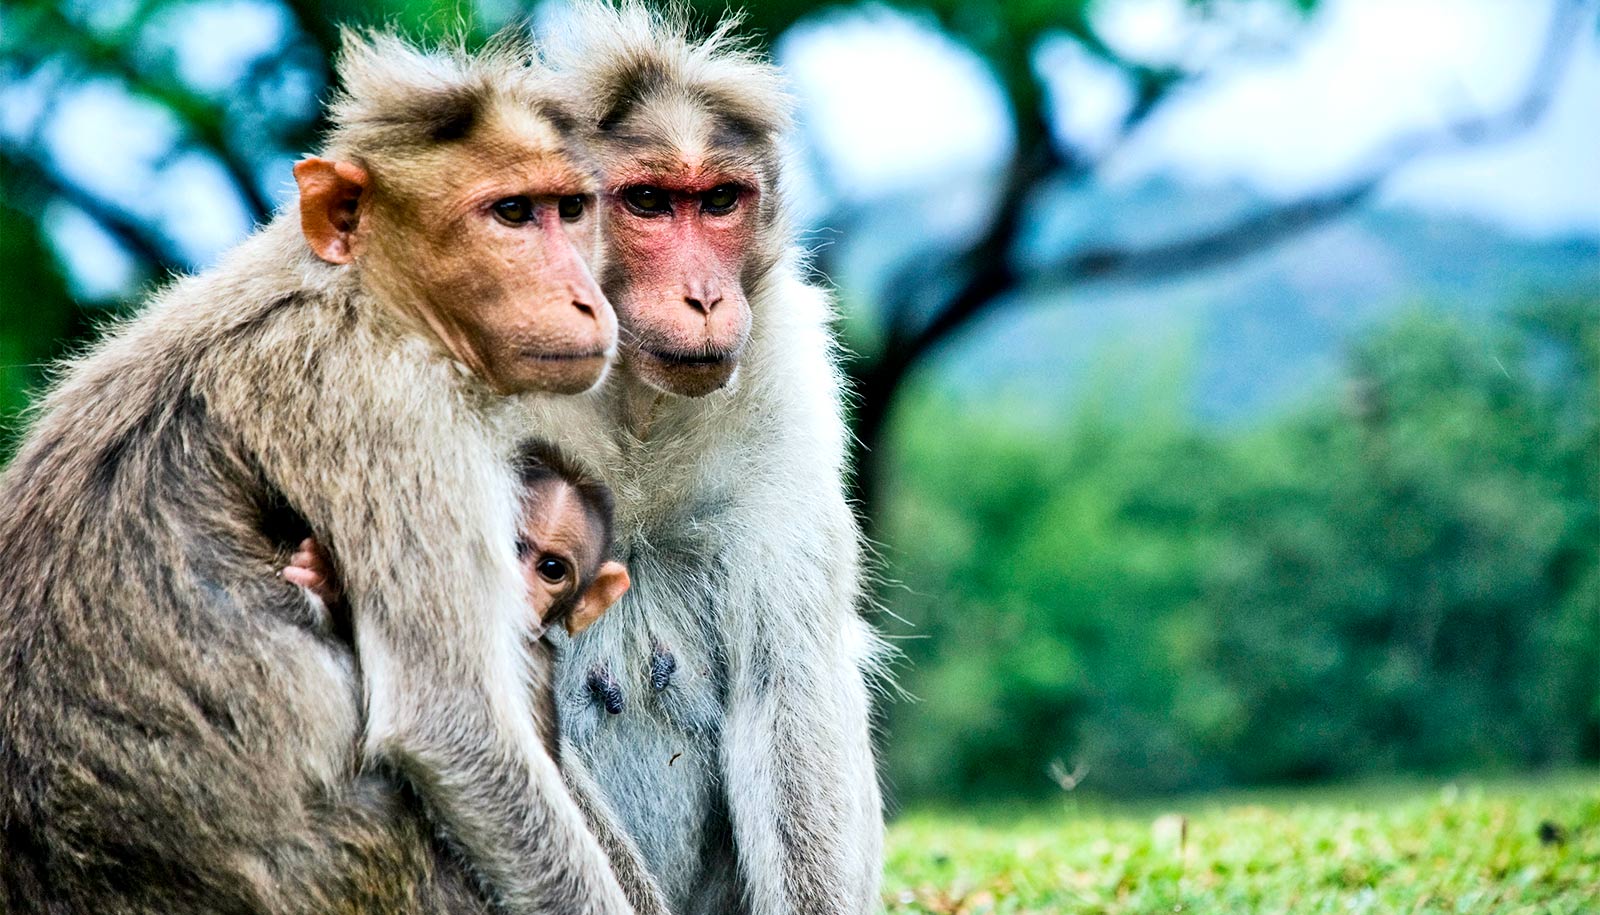 Older male monkeys father fewer babies - Futurity